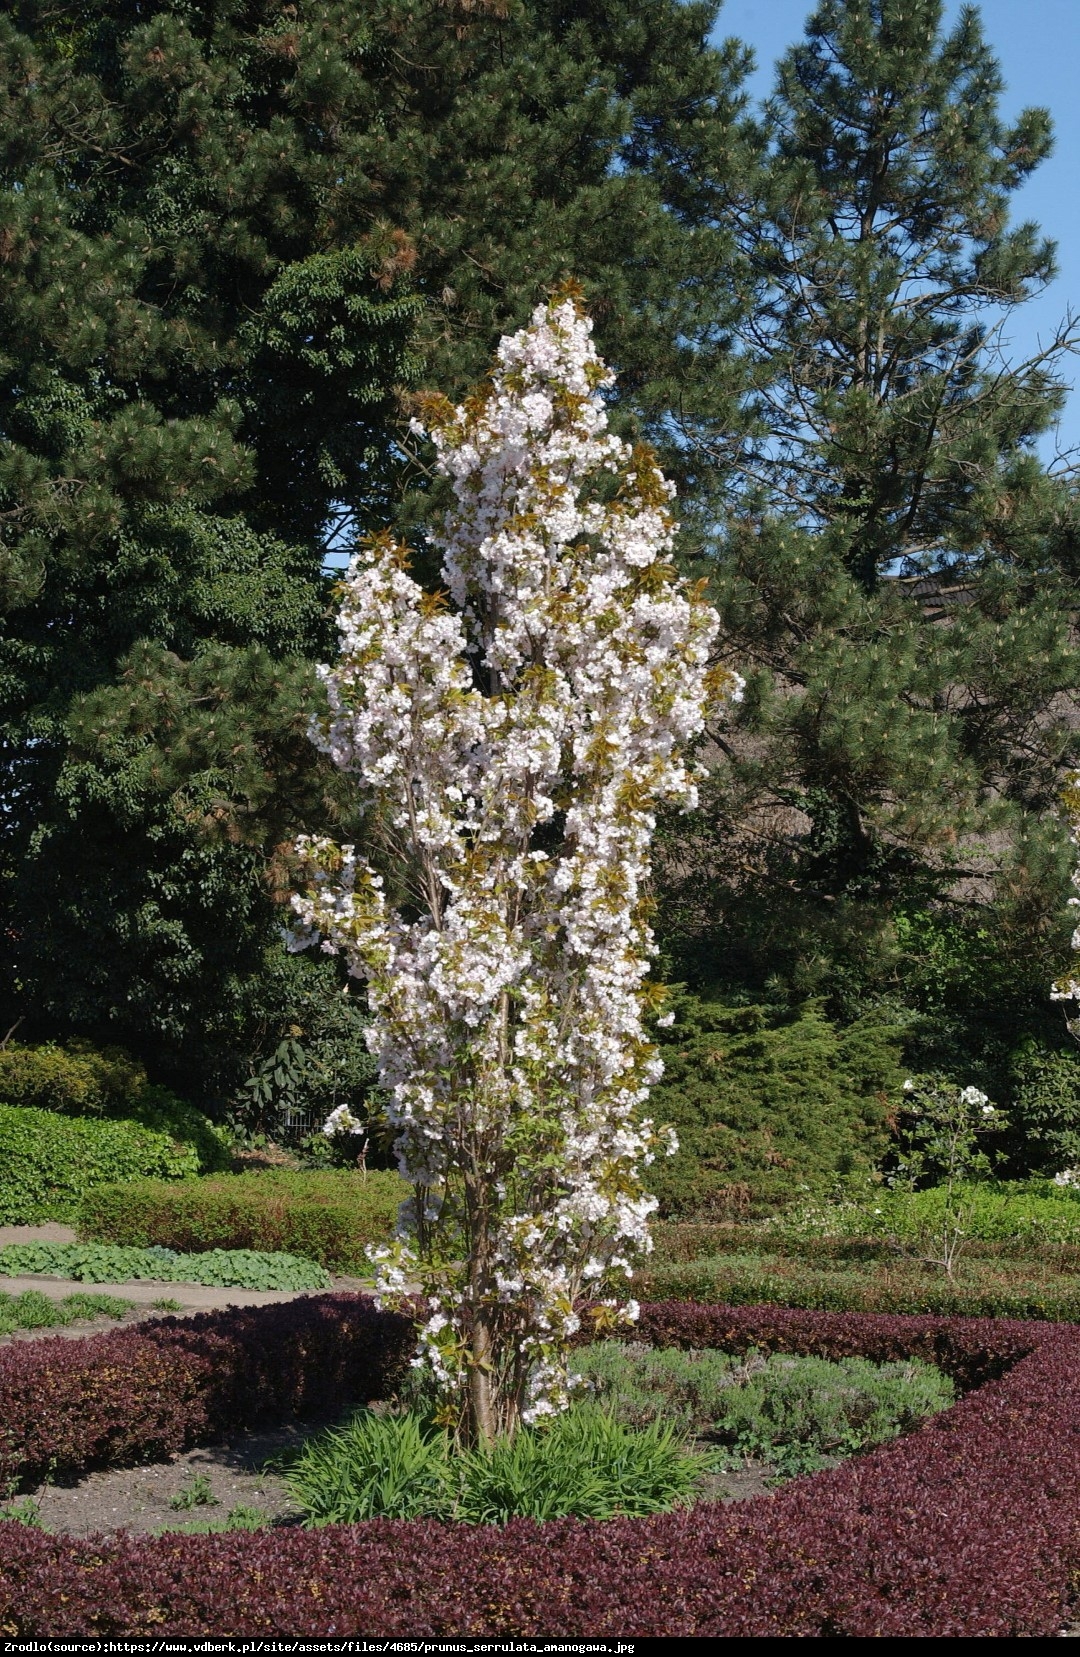 Wiśnia piłkowana Amonagawa - Prunus serrulata Amonagawa